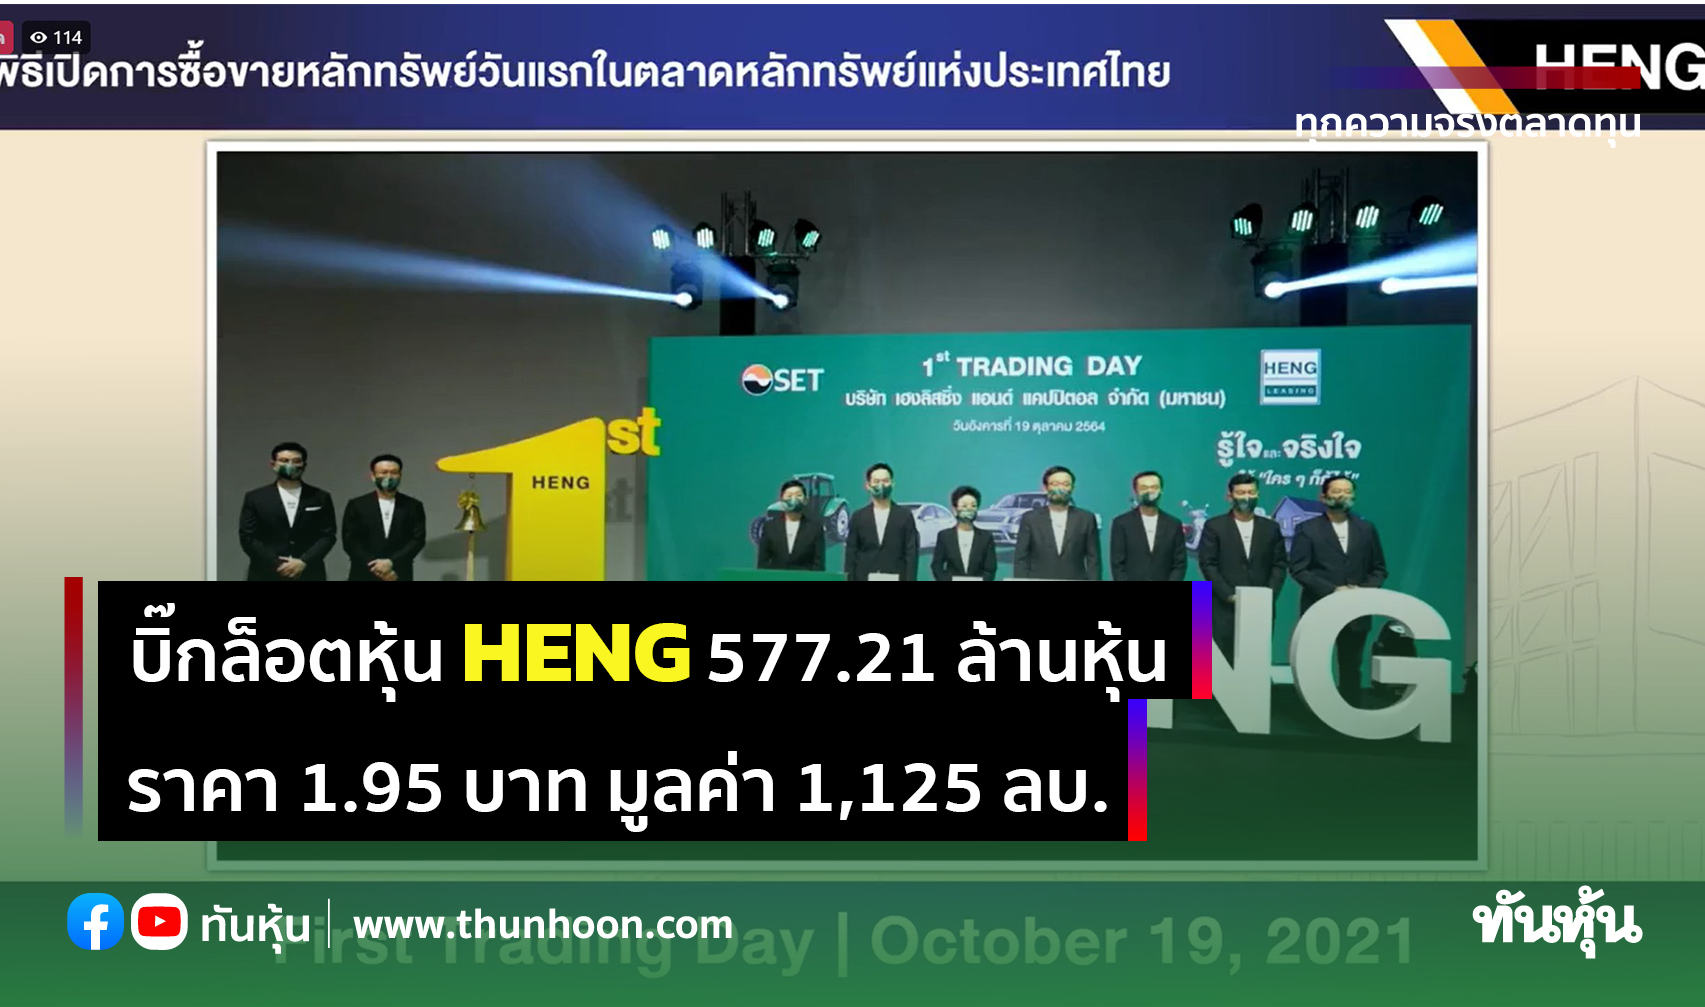 บิ๊กล็อตหุ้น HENG 577.21 ล้านหุ้น ราคา 1.95 บาท มูลค่า 1,125 ลบ.